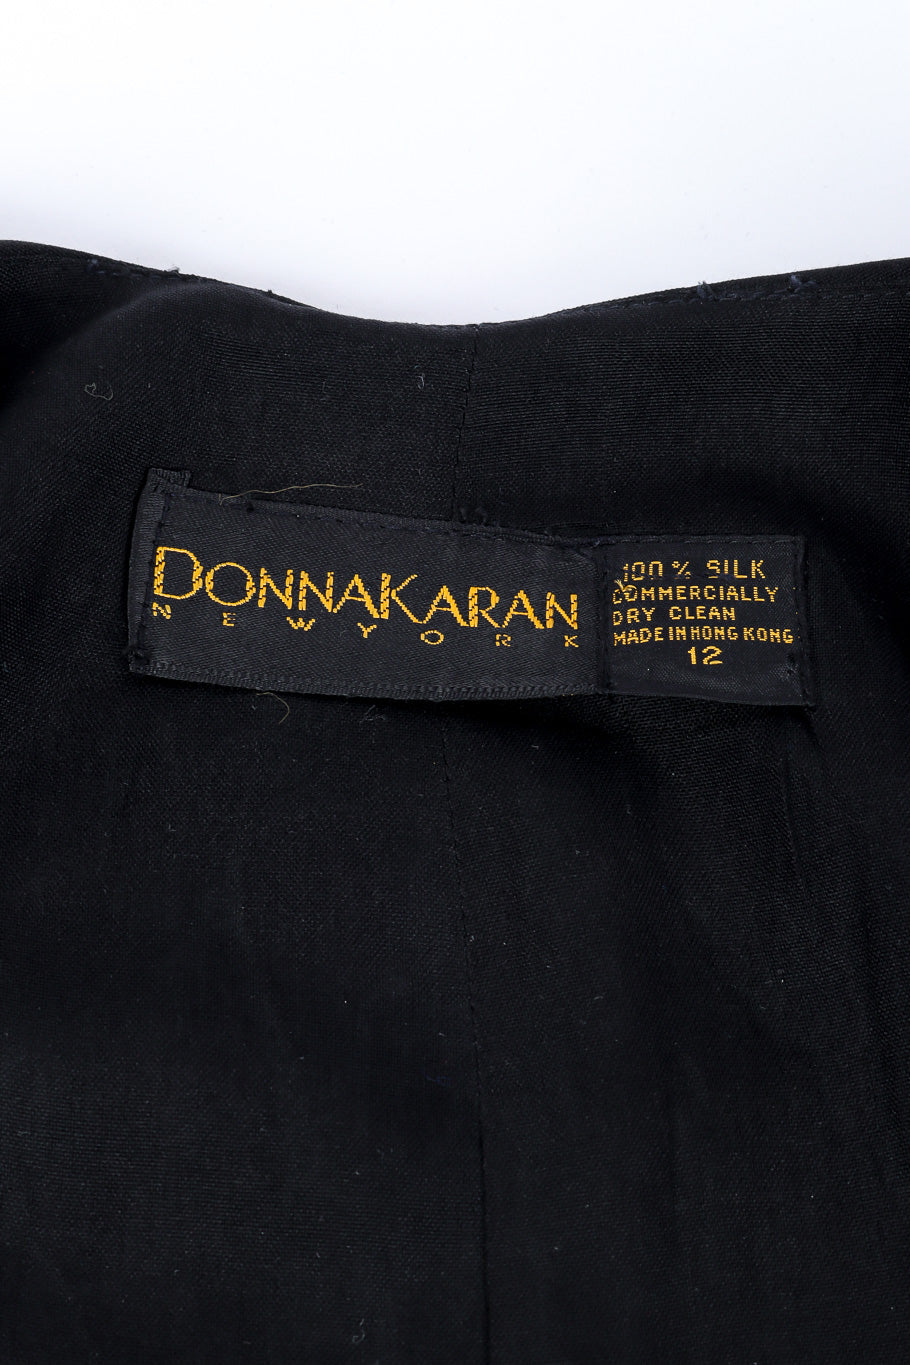 Jacket and skirt set by Donna Karan jacket label @recessla